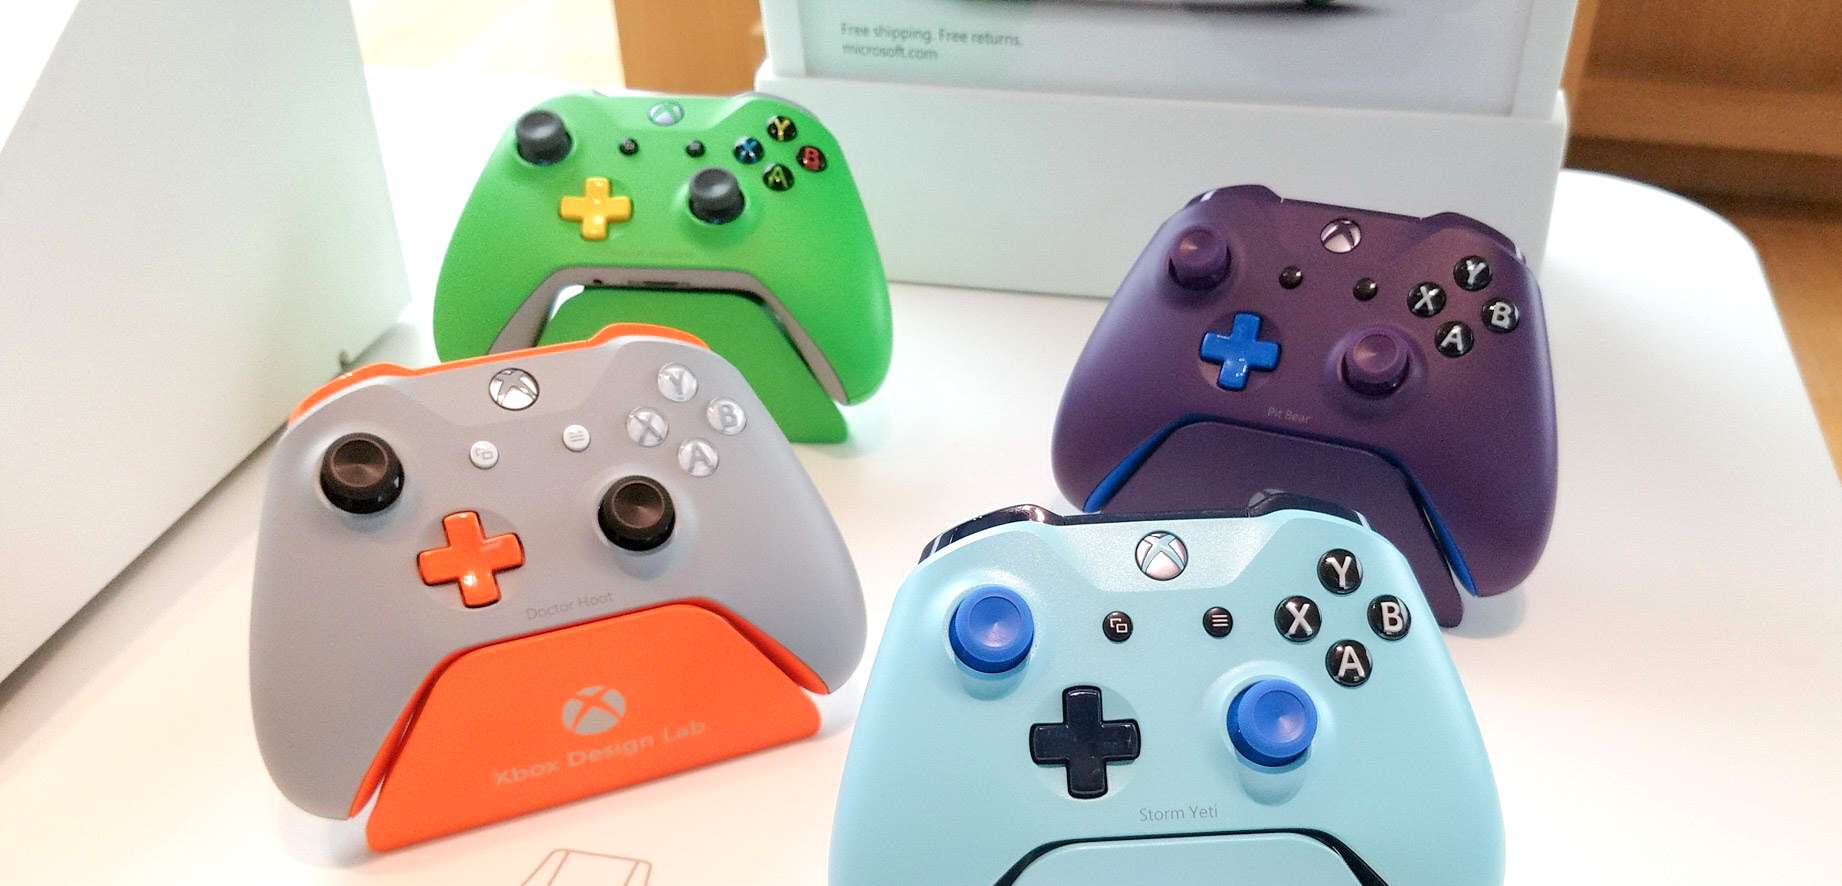 Wyraźnie gorsza sprzedaż Xbox One w ostatnim raporcie Microsoft